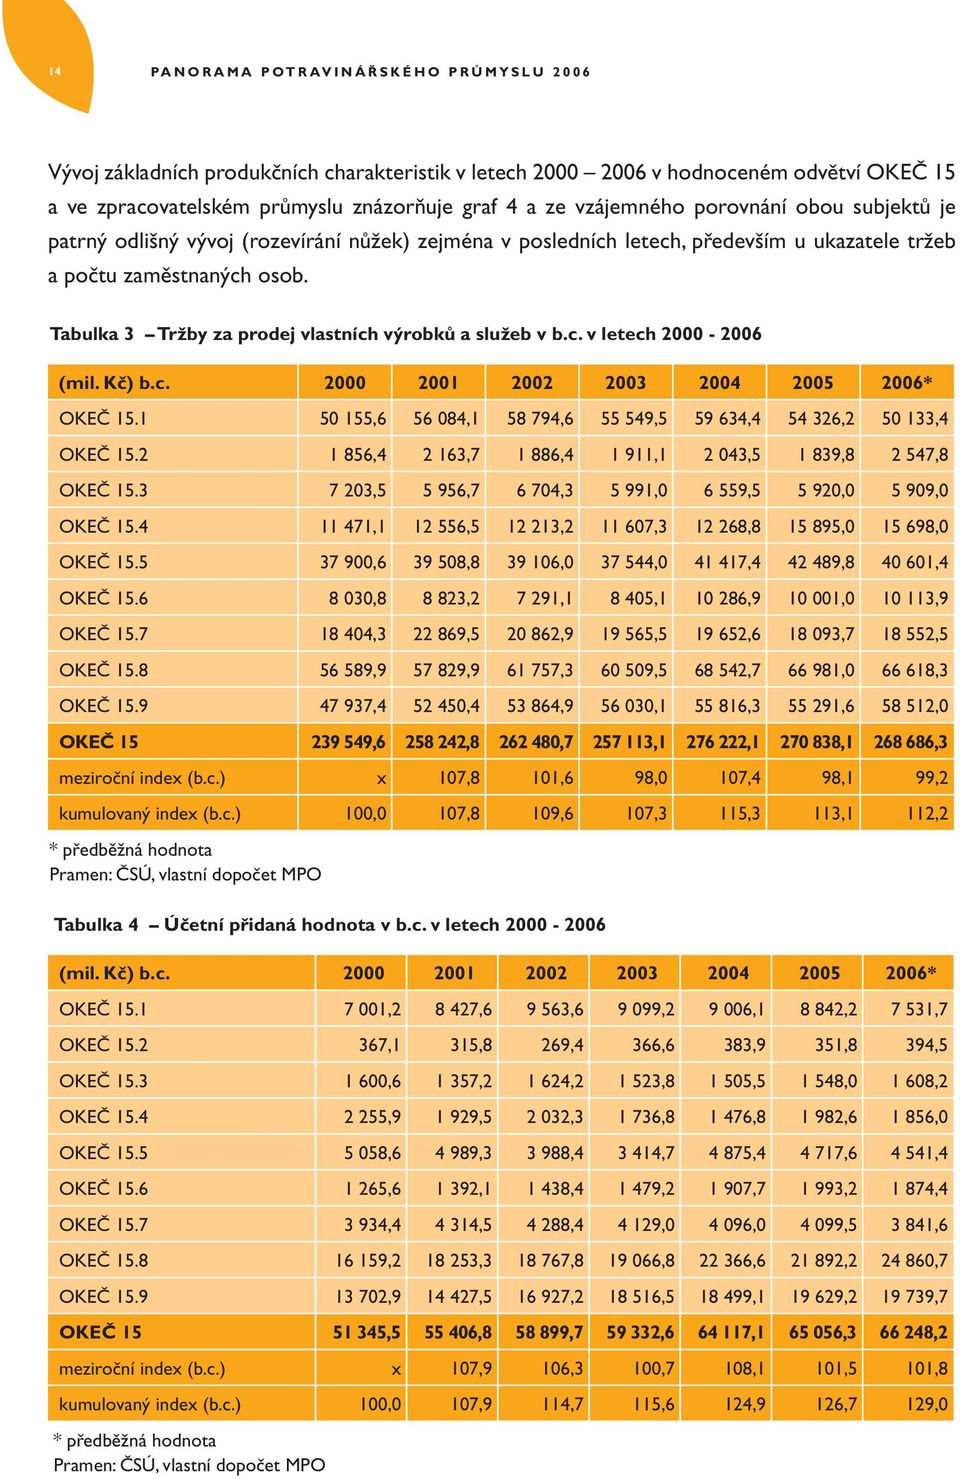 Tabulka 3 Tržby za prodej vlastních výrobků a služeb v b.c. v letech 2000-2006 (mil. Kč) b.c. 2000 2001 2002 2003 2004 2005 2006* OKEČ 15.